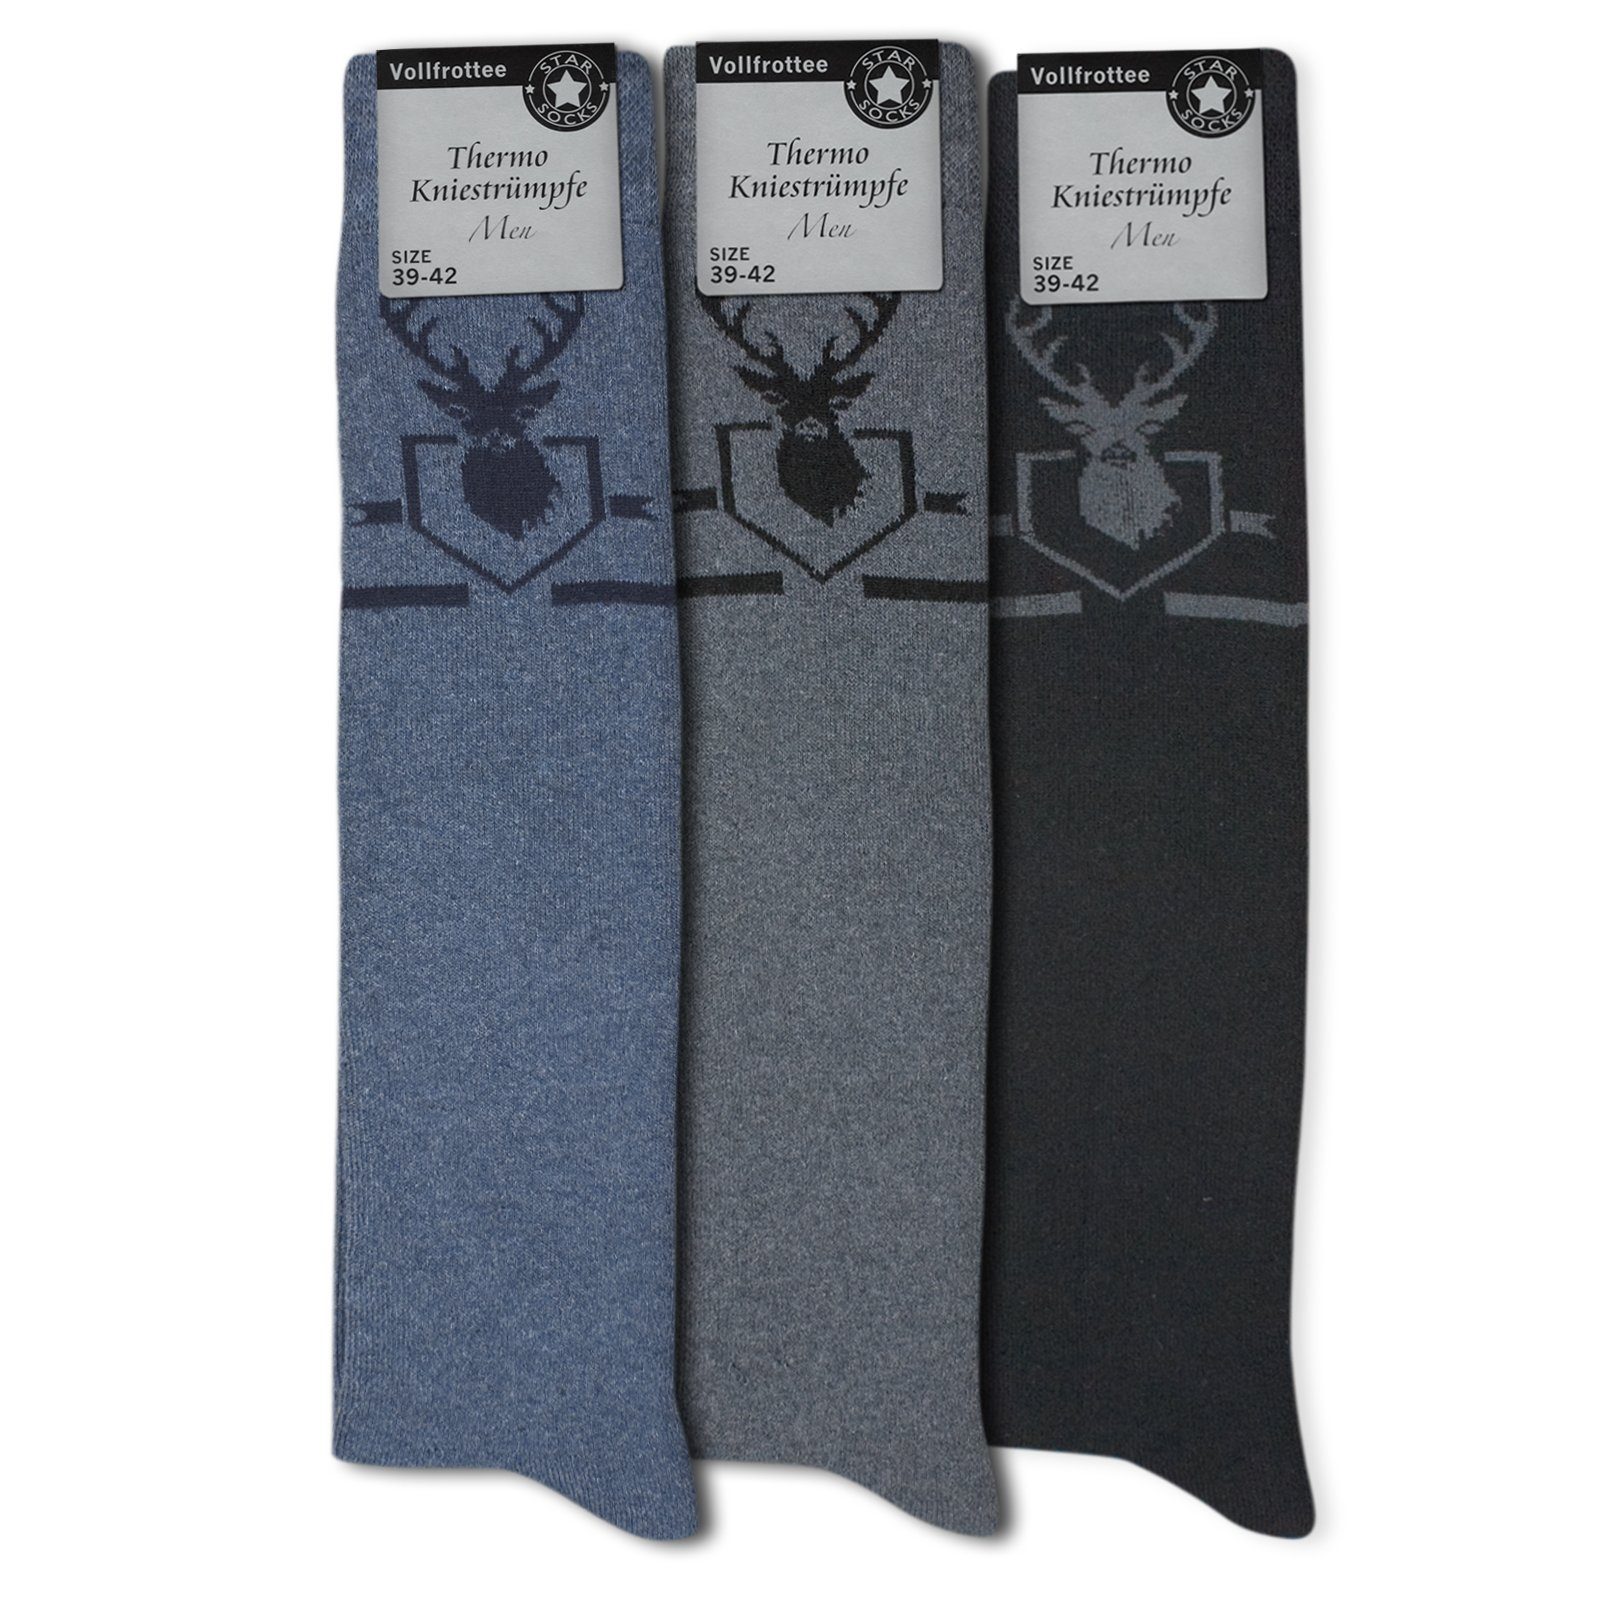 jeansblau THERMO schwarz) Kniestrümpfe (Bund, Vollfrottee Sockenbude Die 3-Paar, grau